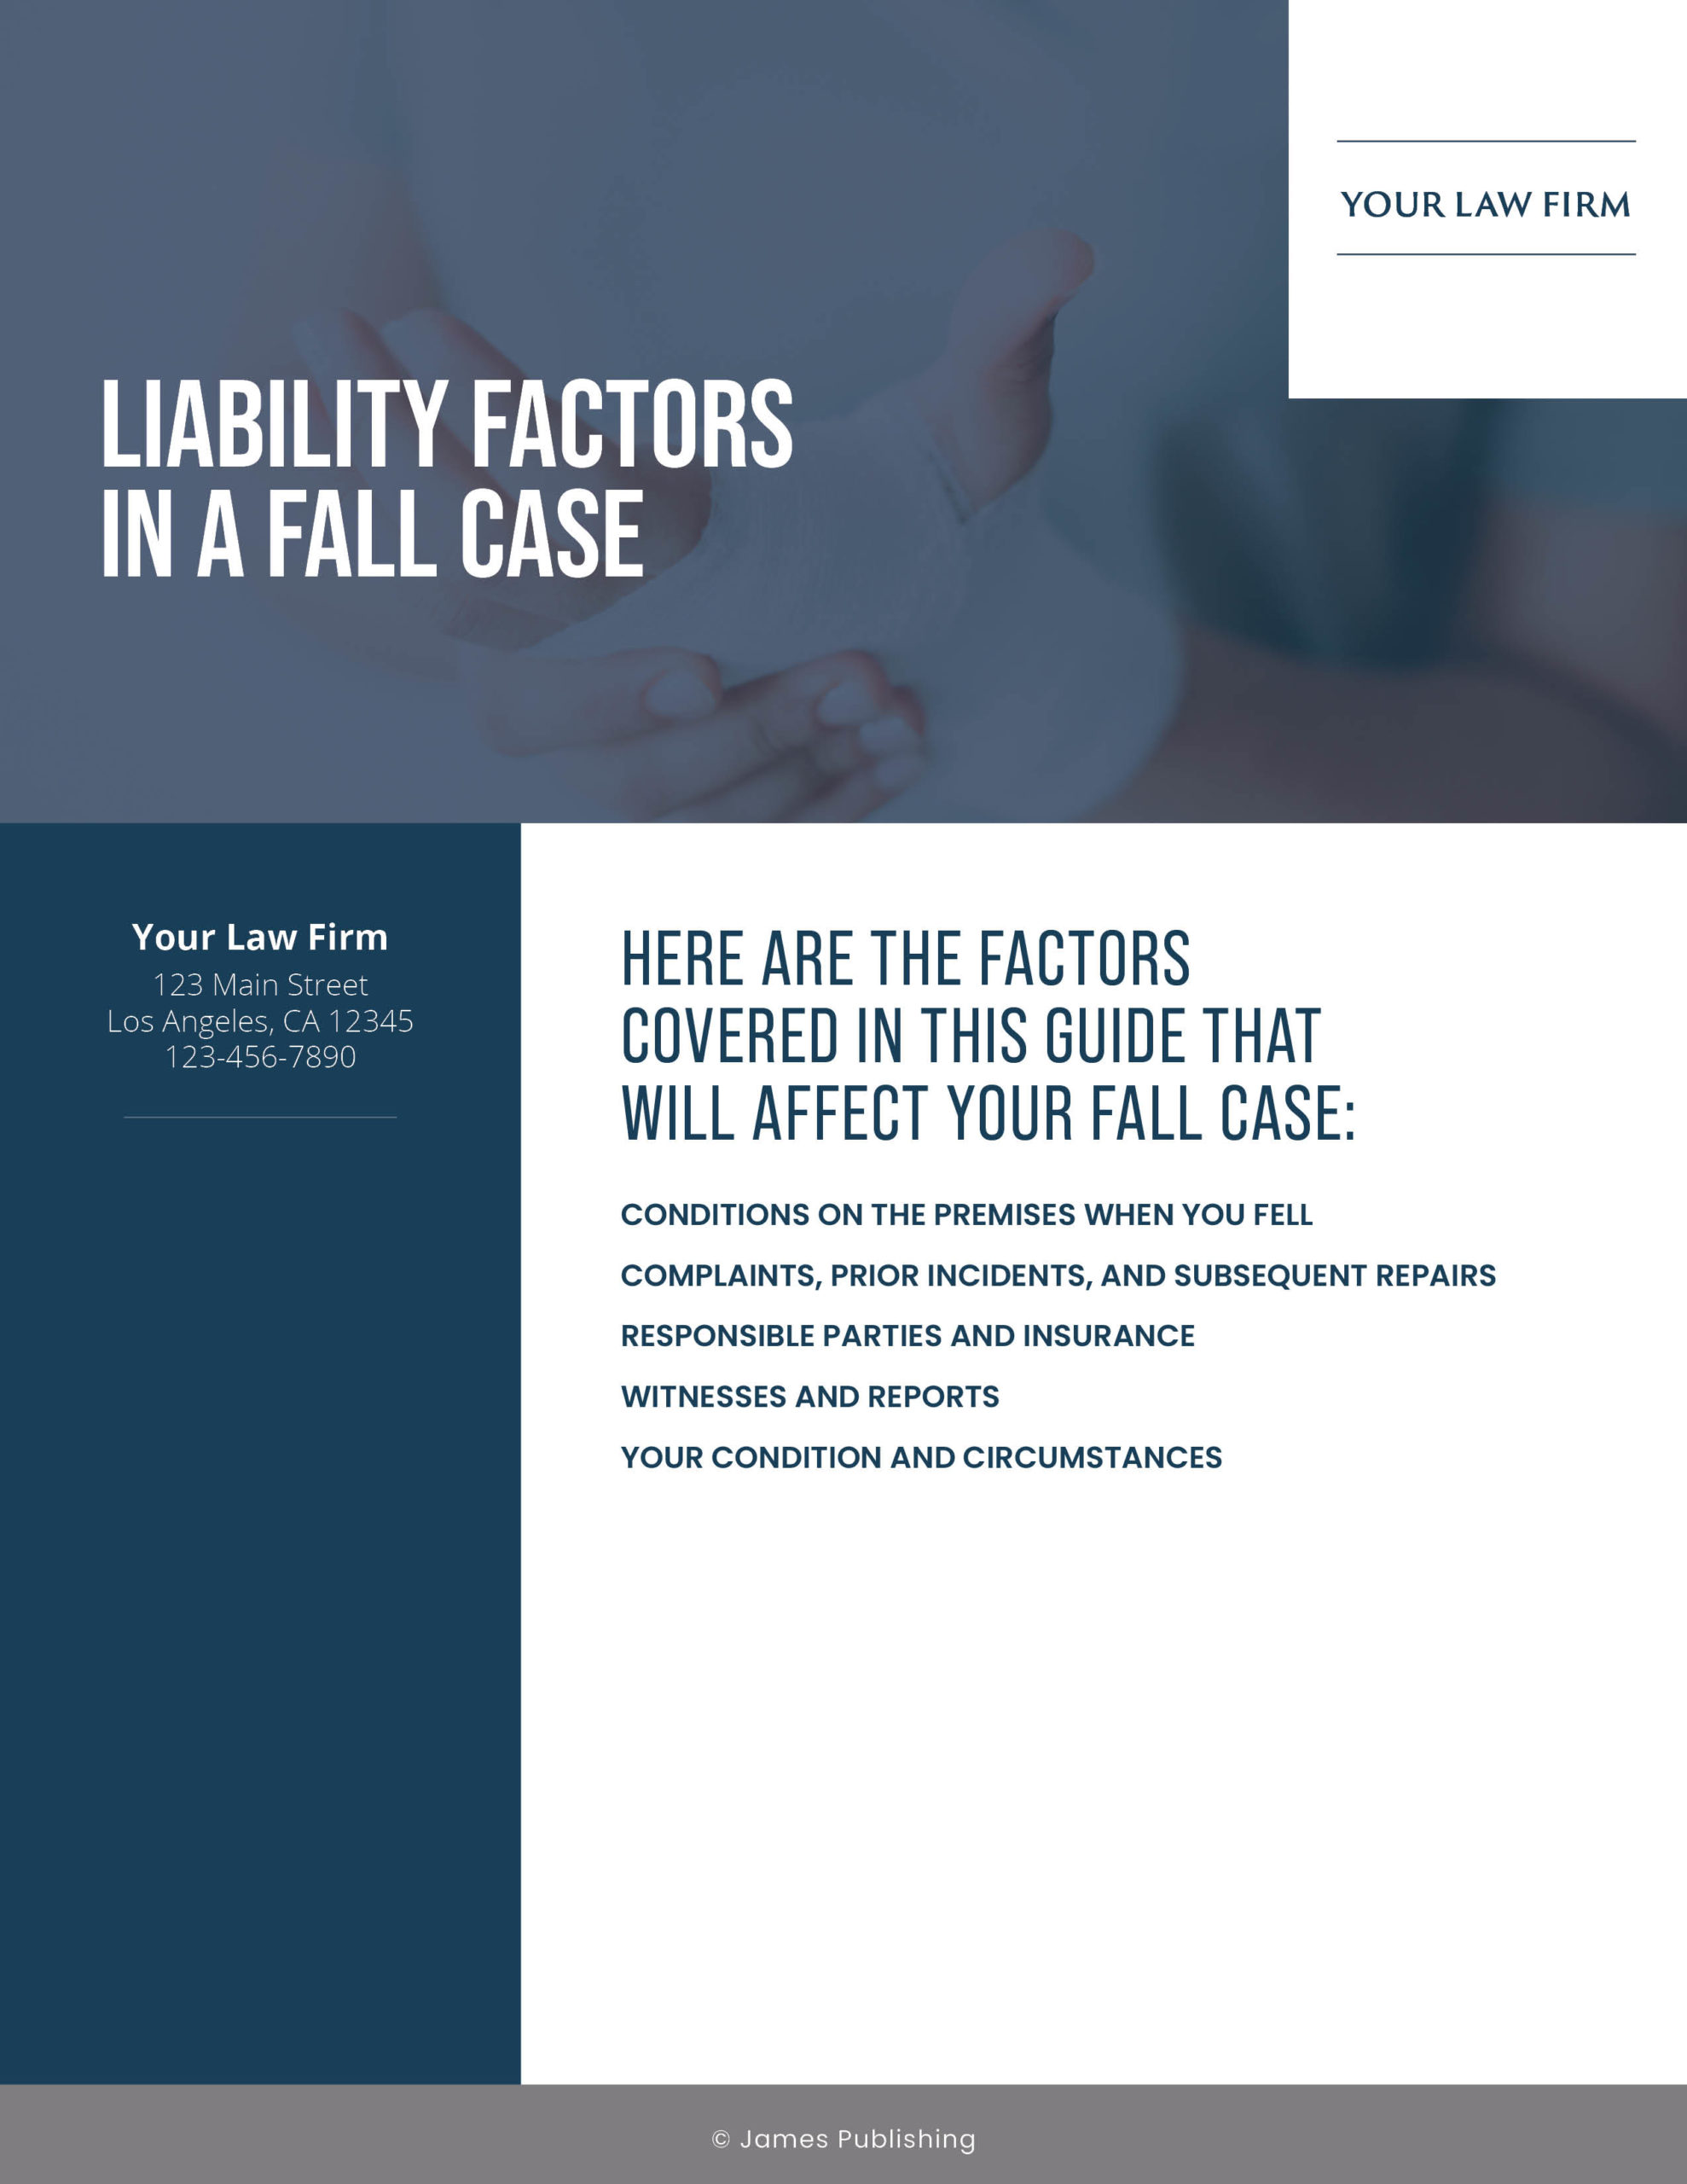 PI-20 Liability Factors in a Fall Case